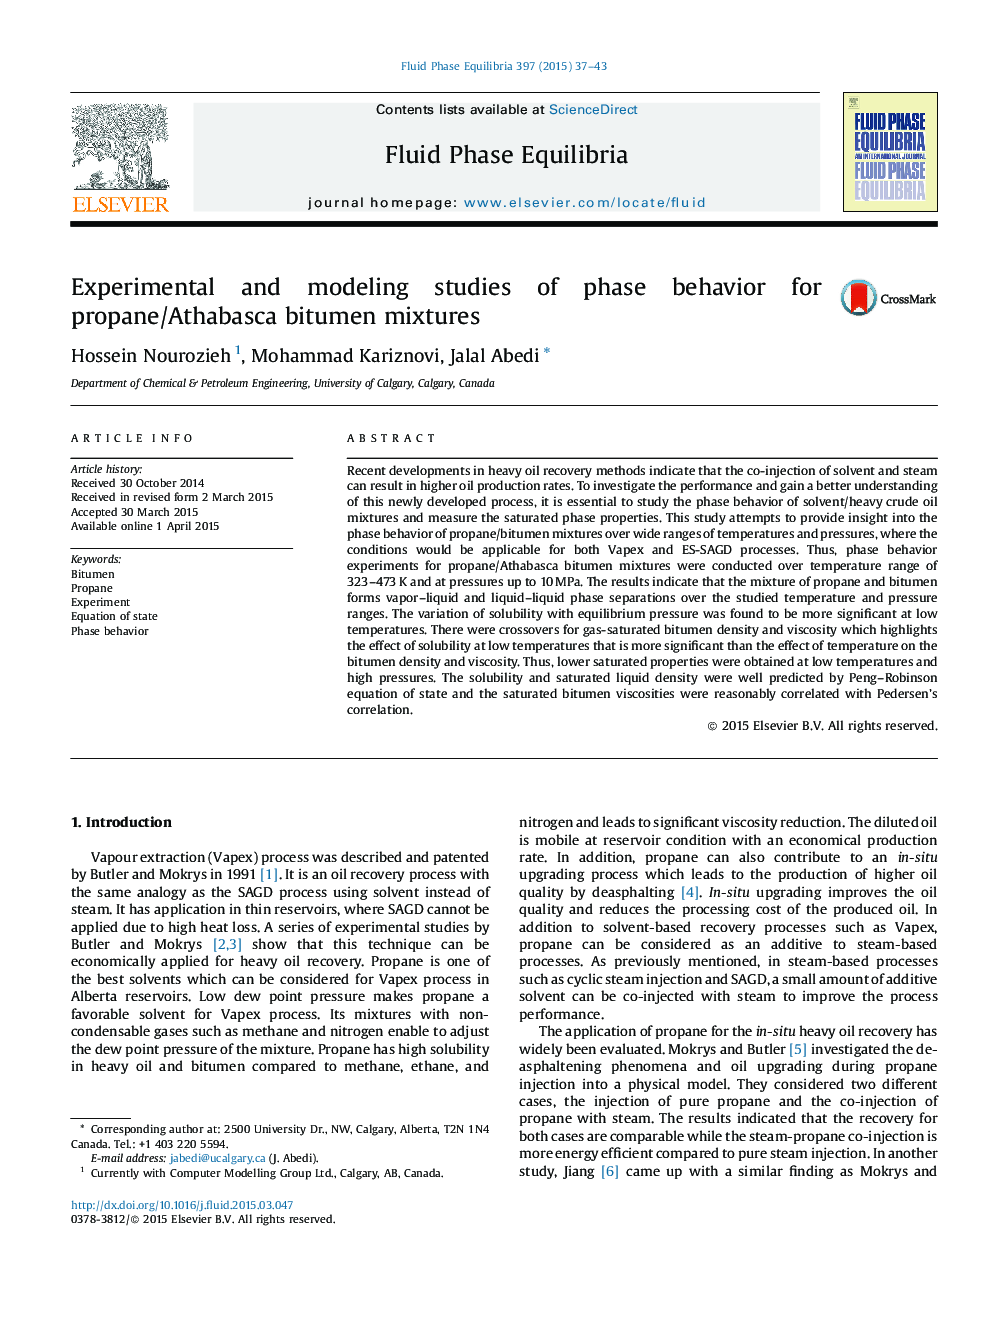 مطالعات تجربی و مدلسازی رفتار فاز برای مخلوط های قیری پروپان / اتابازاکا 